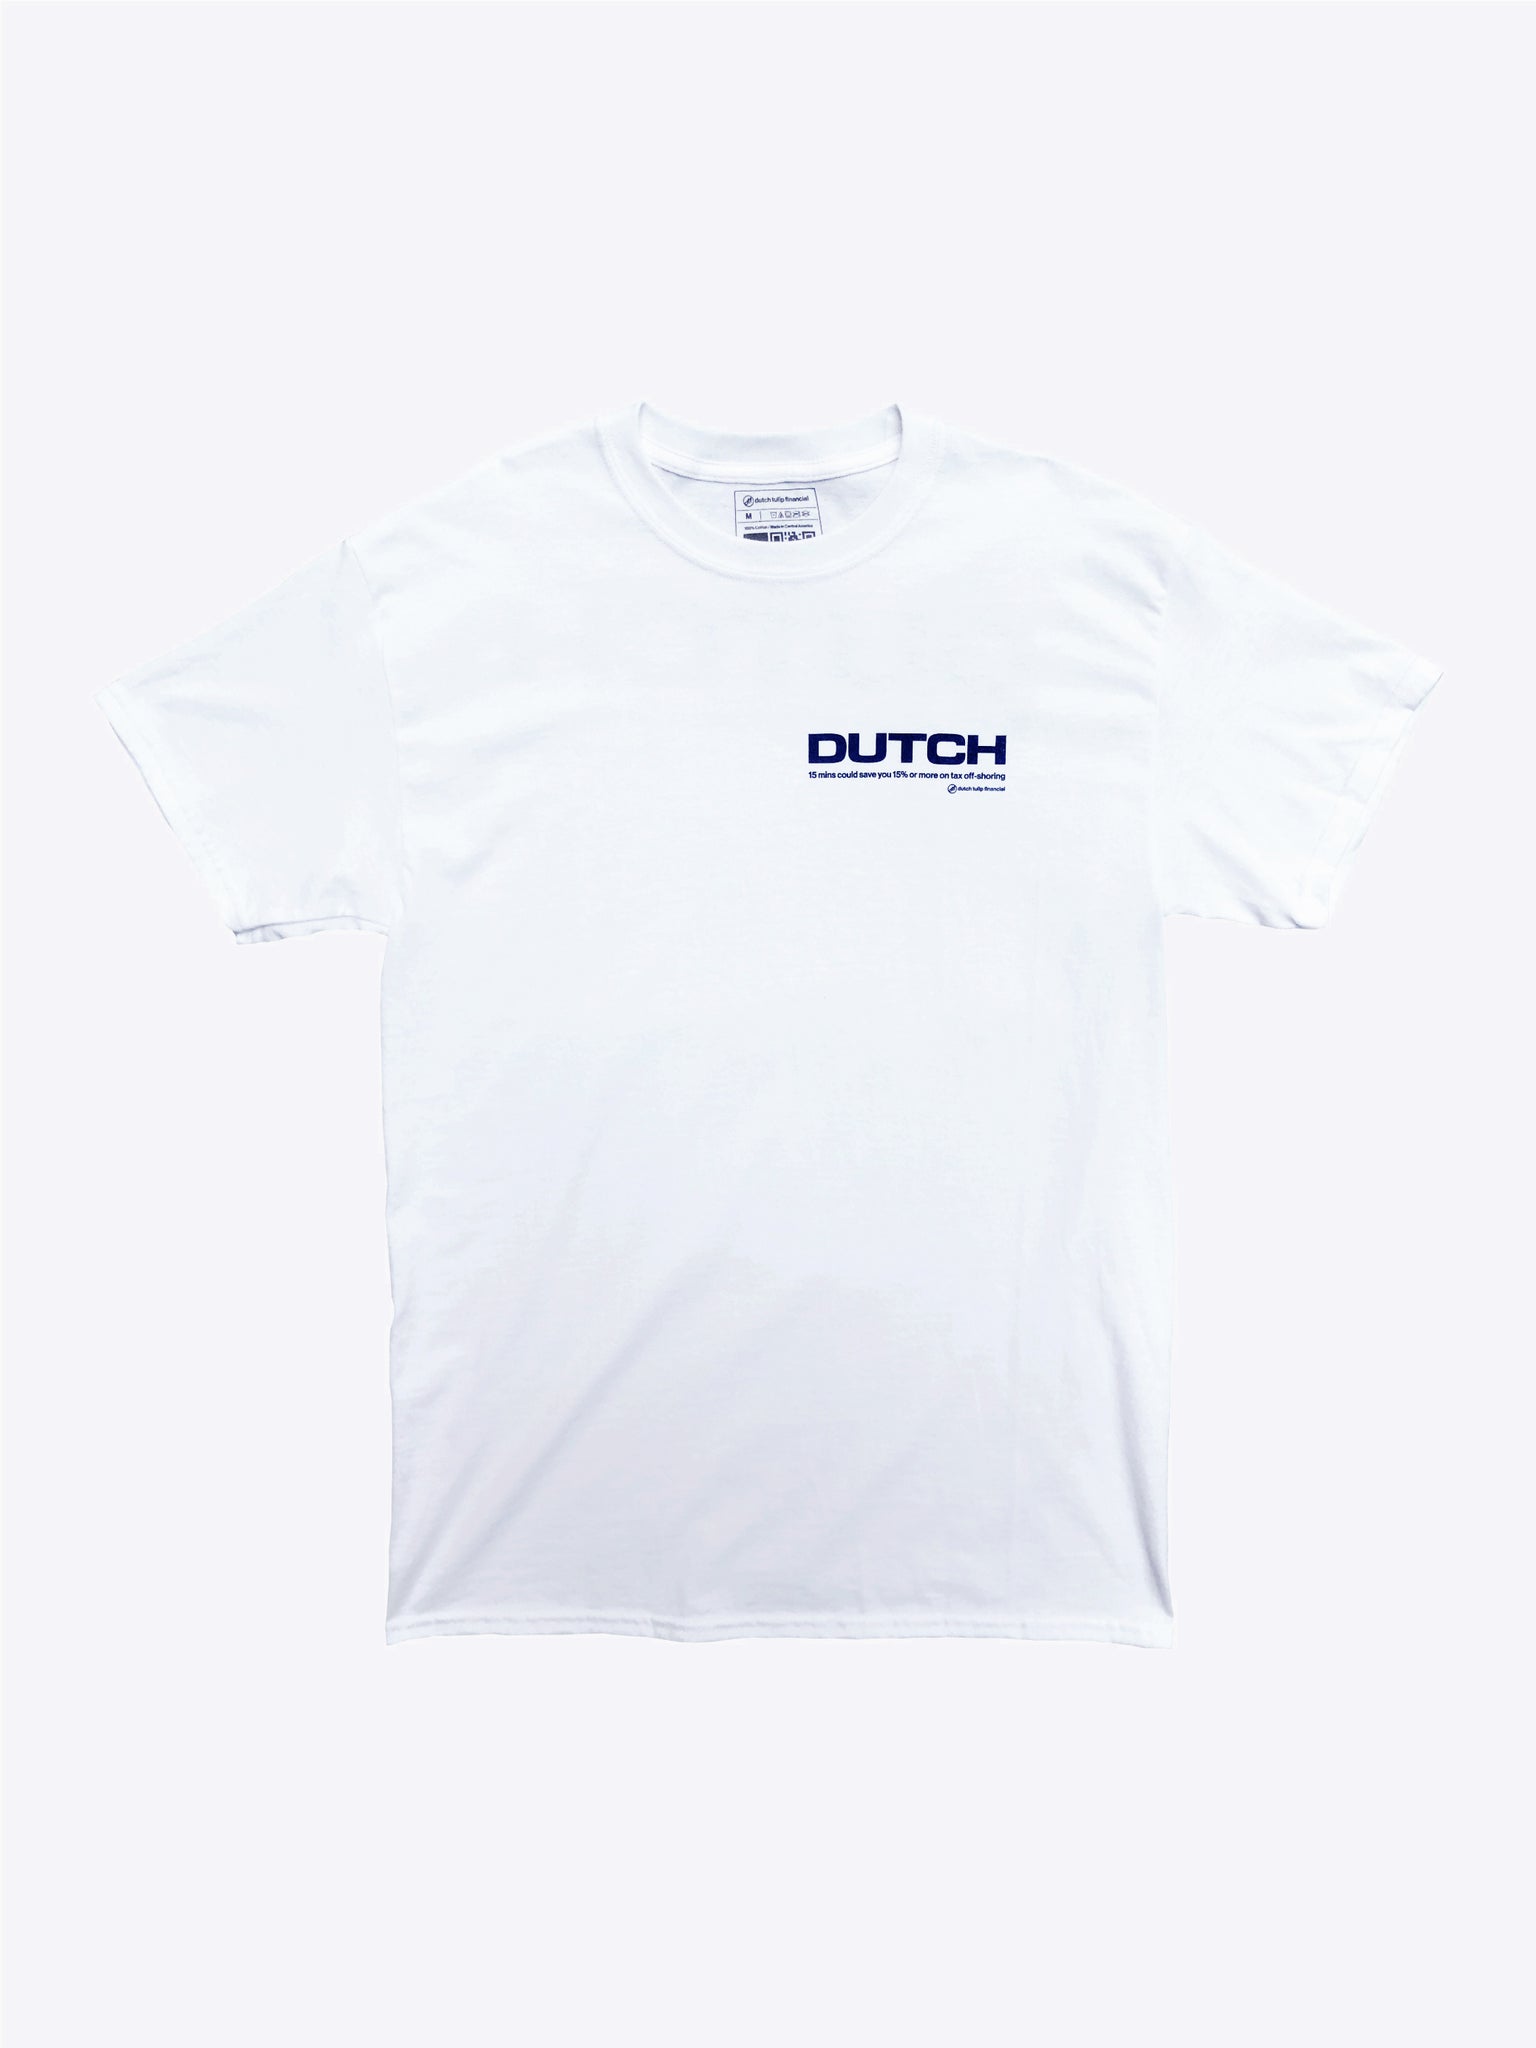 Geico Dutch Tee - White